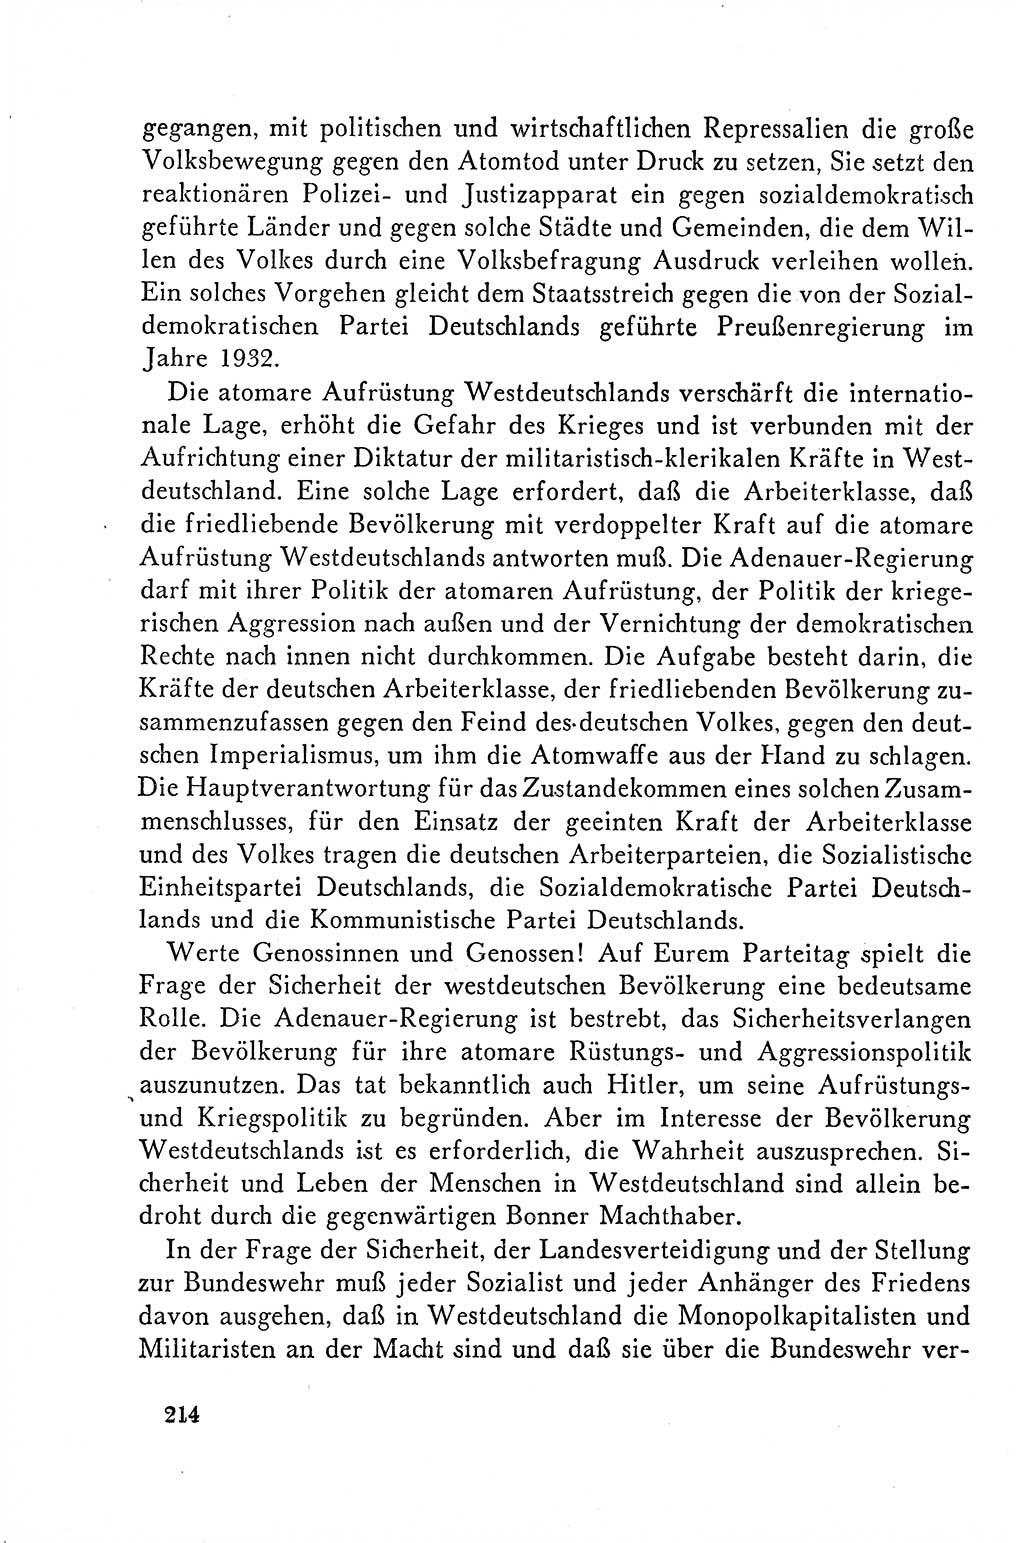 Dokumente der Sozialistischen Einheitspartei Deutschlands (SED) [Deutsche Demokratische Republik (DDR)] 1958-1959, Seite 214 (Dok. SED DDR 1958-1959, S. 214)